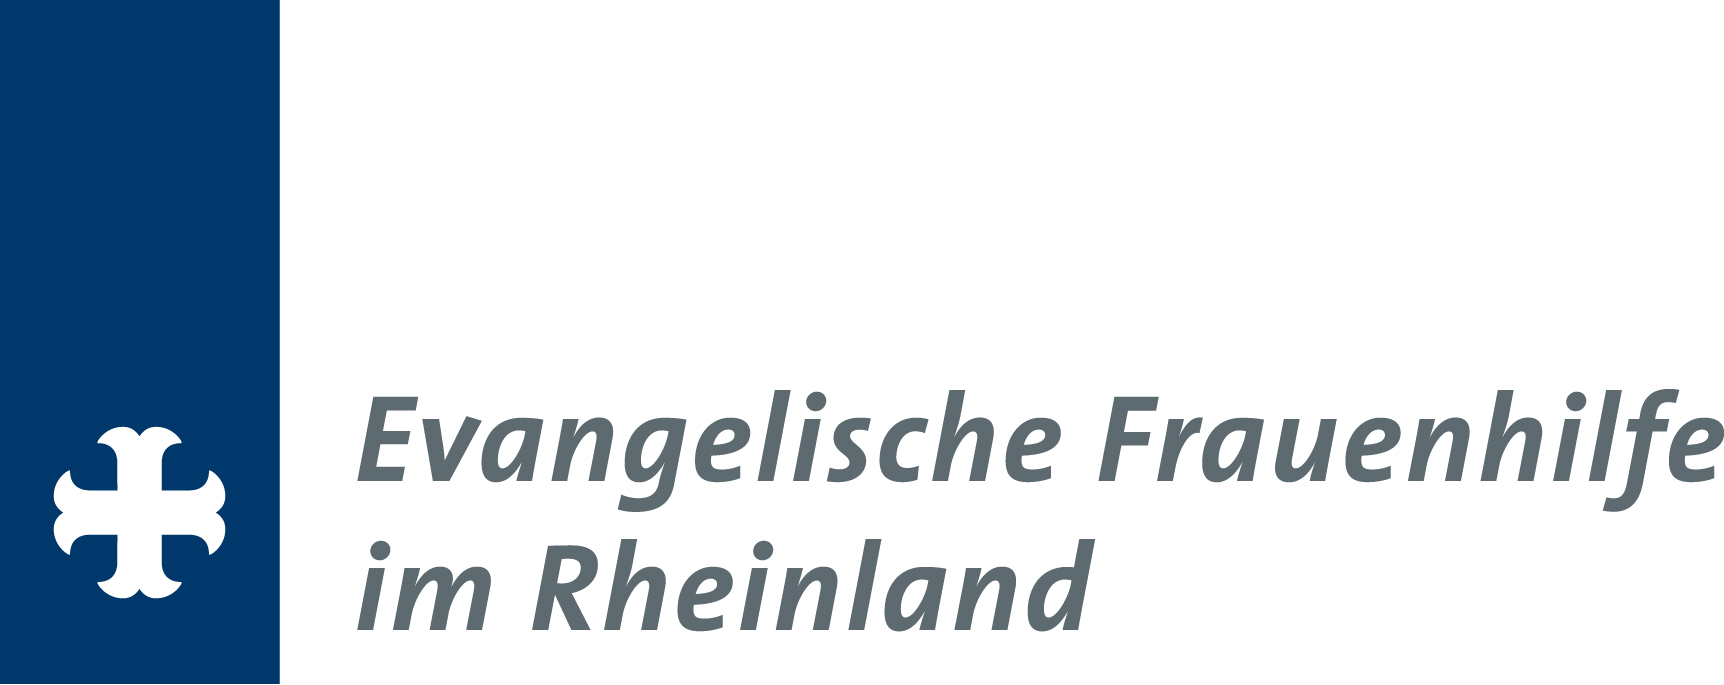 Evangelische Frauenhilfe im Rheinland e.V.